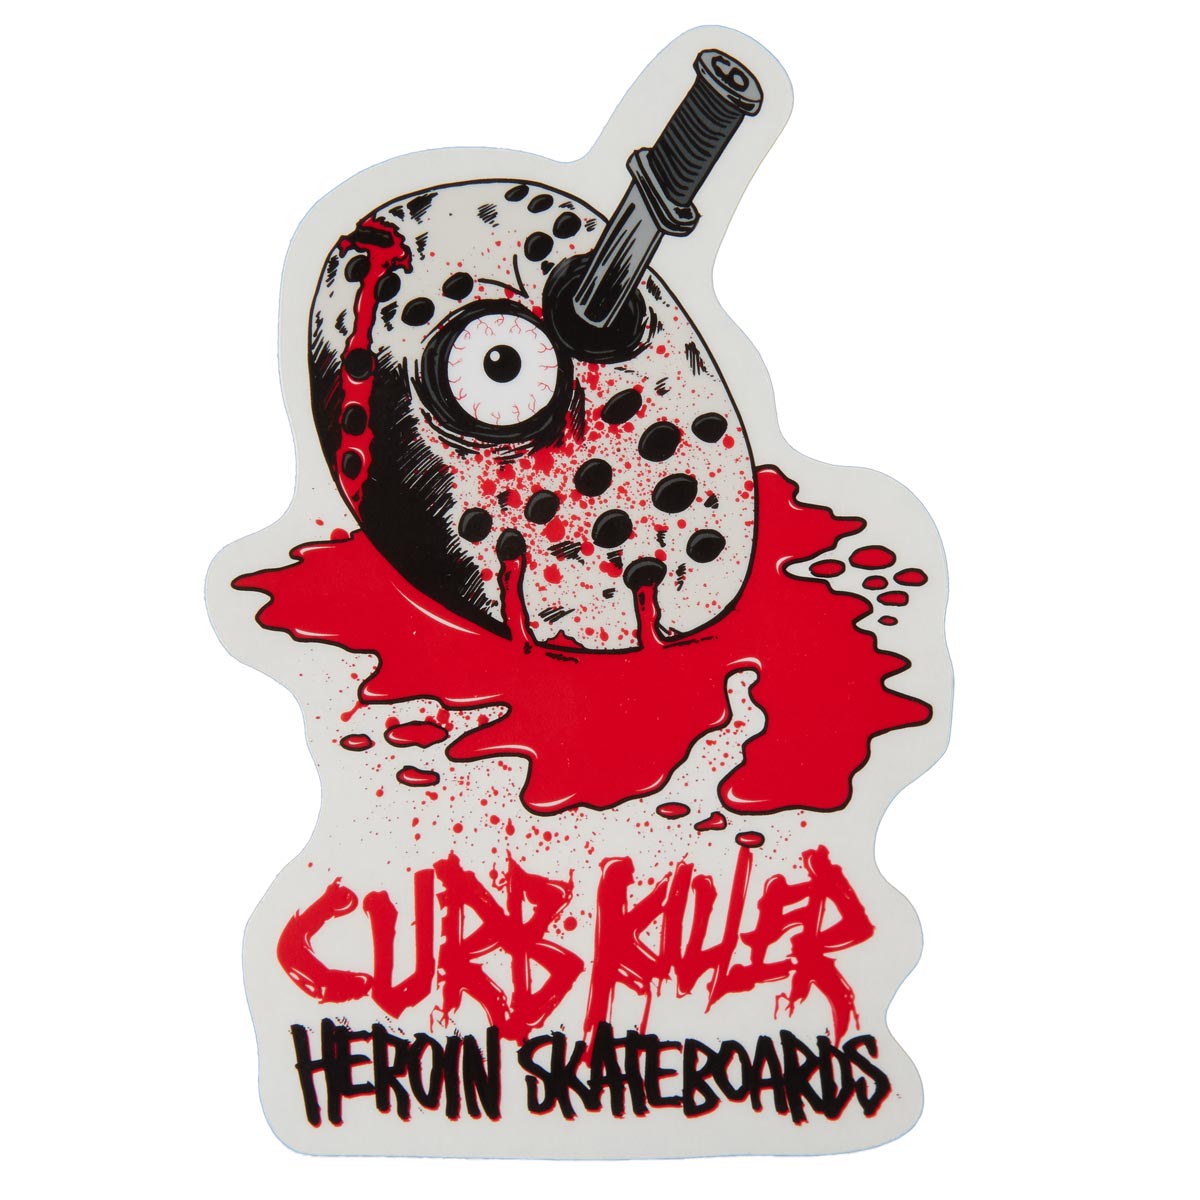 Heroin Eggzilla Sticker - Curb Killer 6 image 1